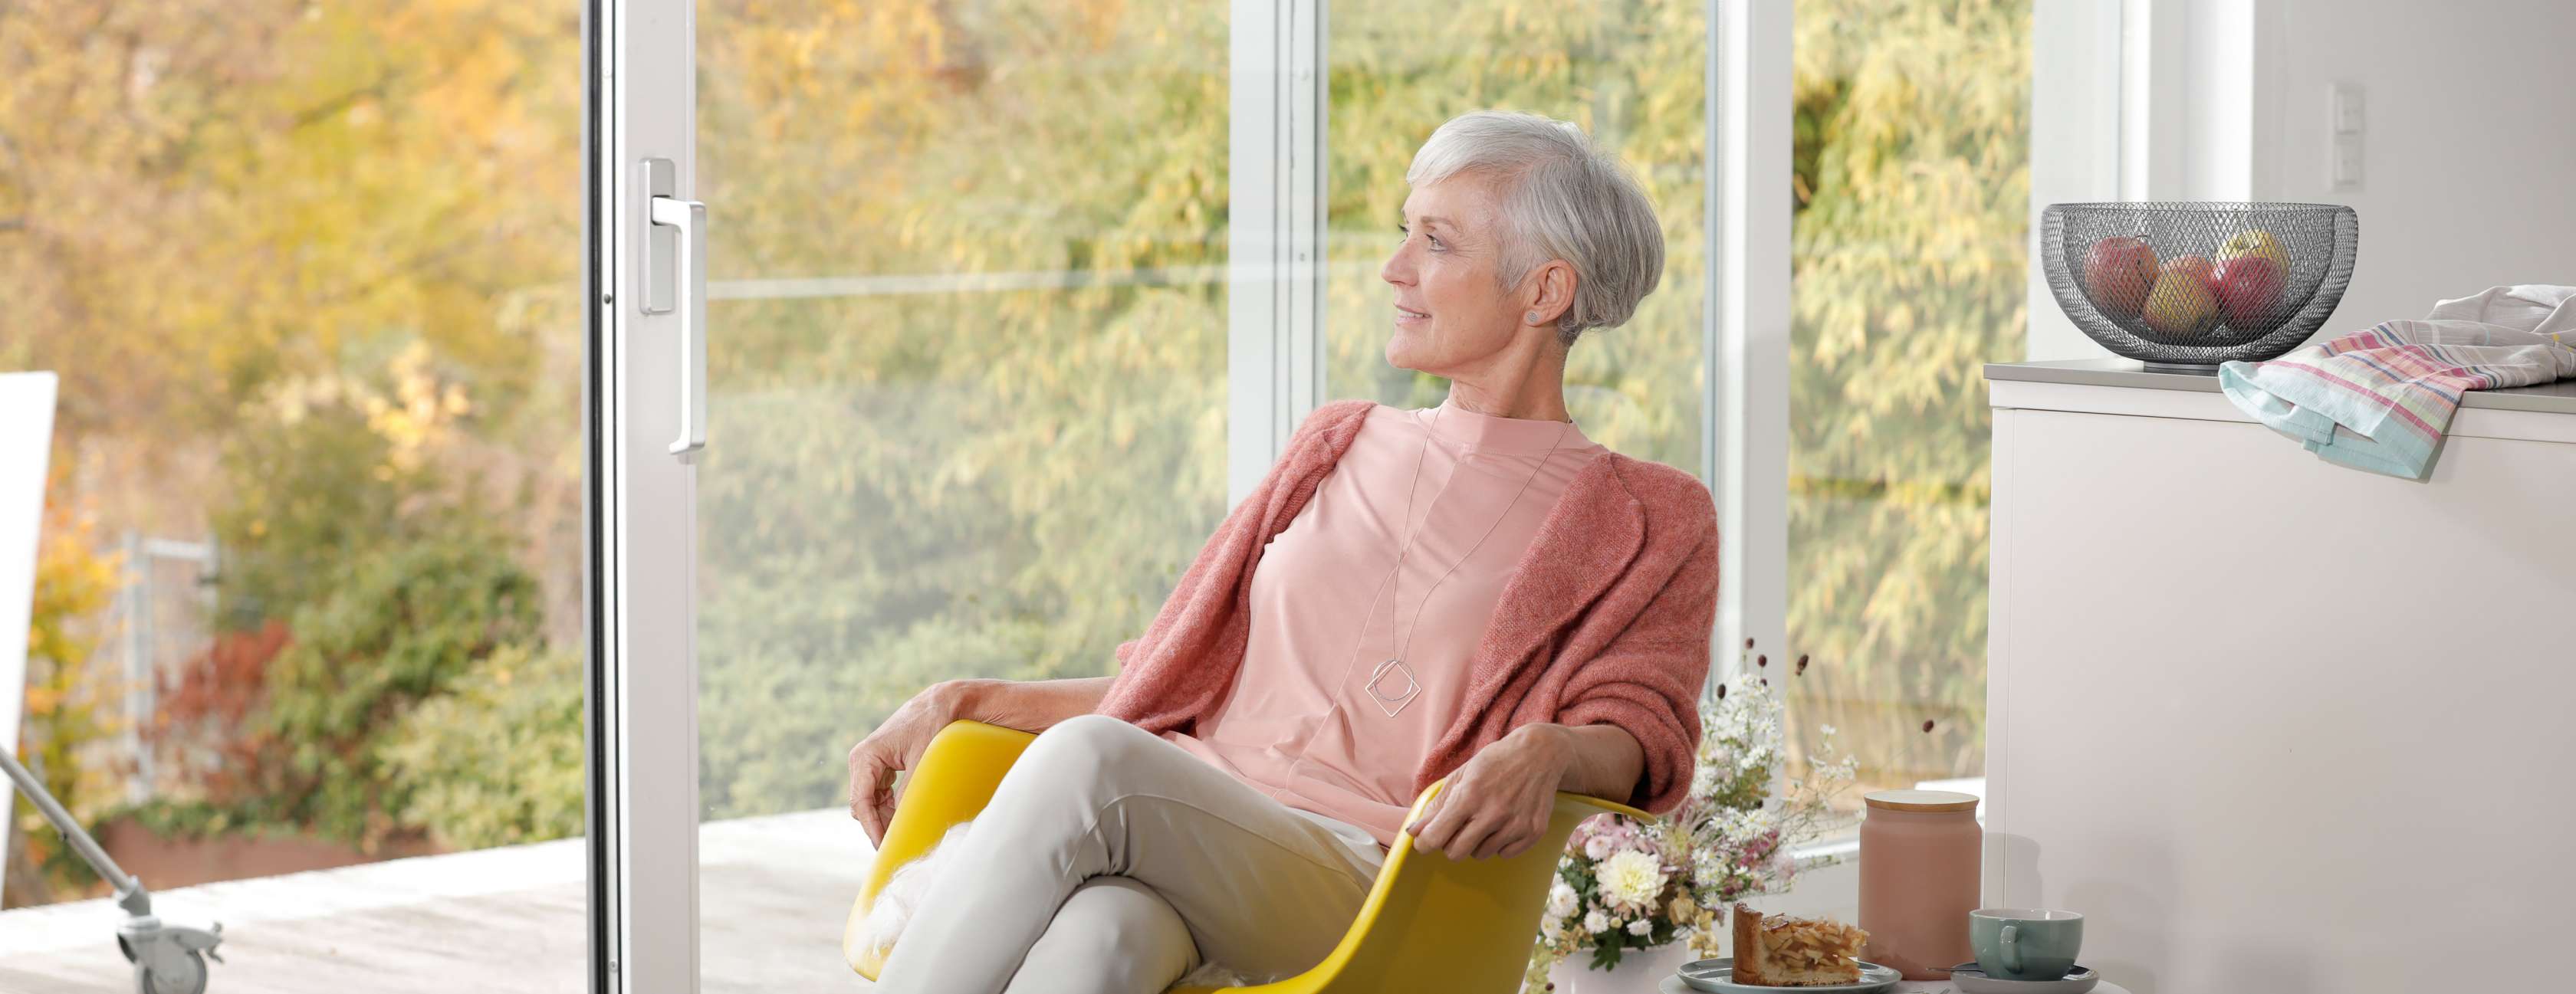 Ältere Frau sitzt entspannt in ihrem Wohnzimmer und schaut durch eine Schiebetür auf die Terrasse